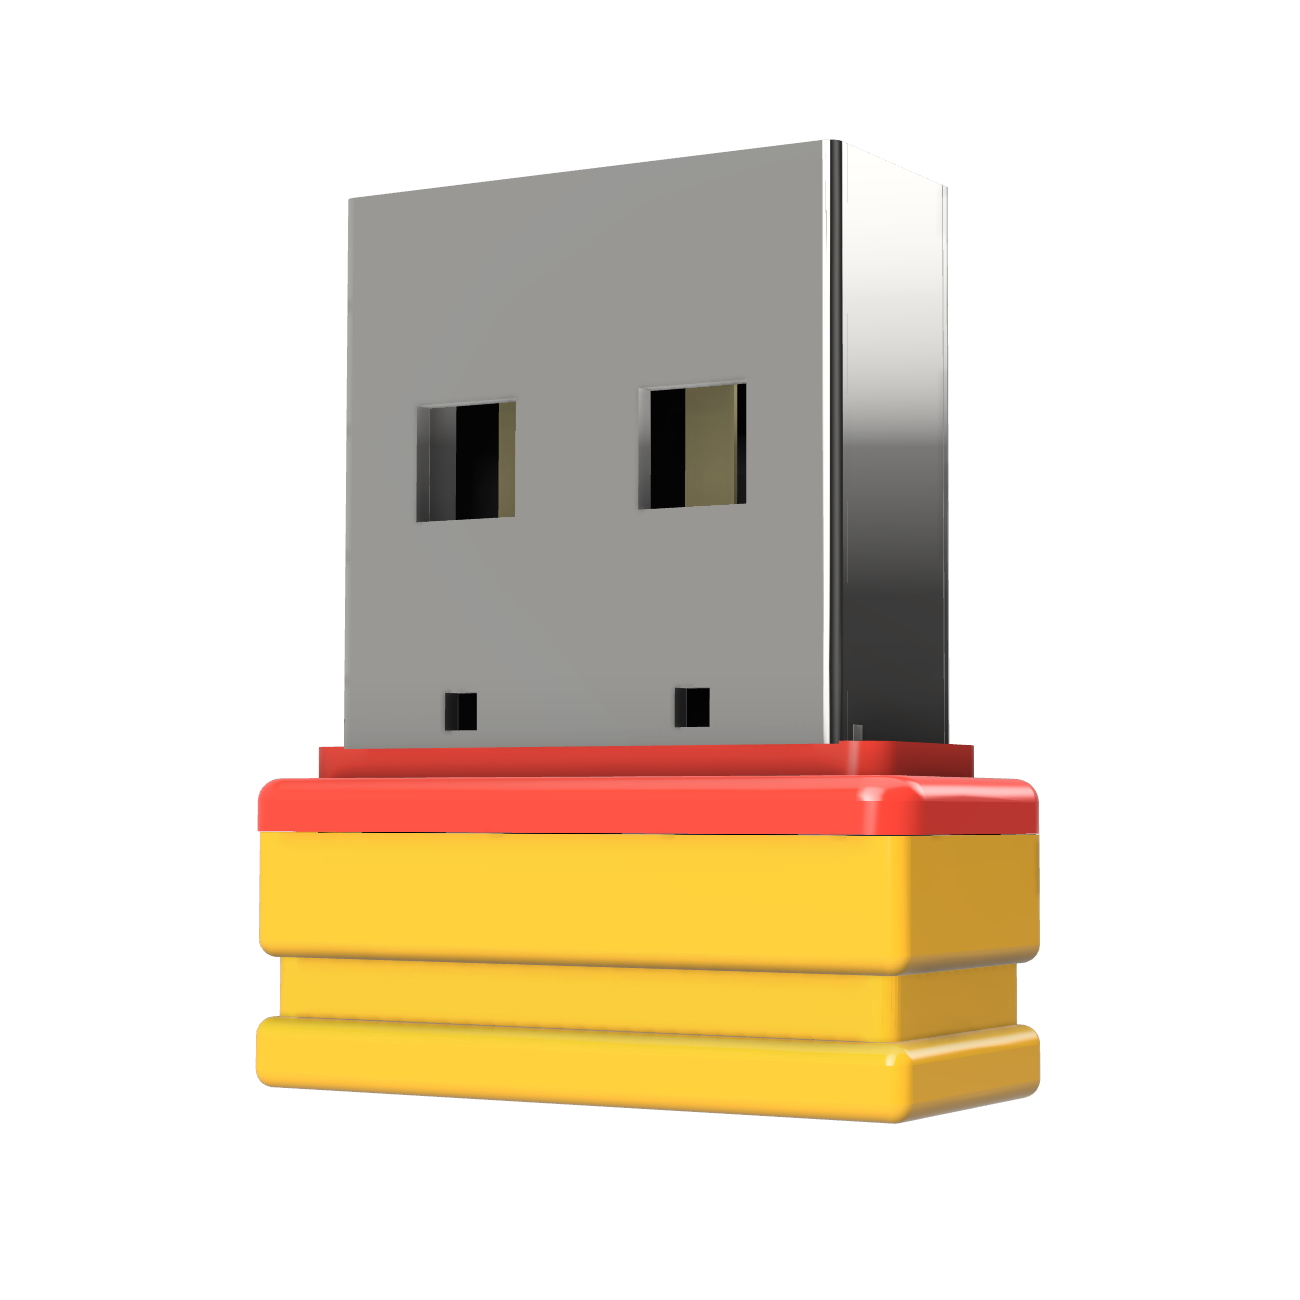 USB GERMANY ®ULTRA Mini P1 GB) USB-Stick (Gelb/Rot, 32